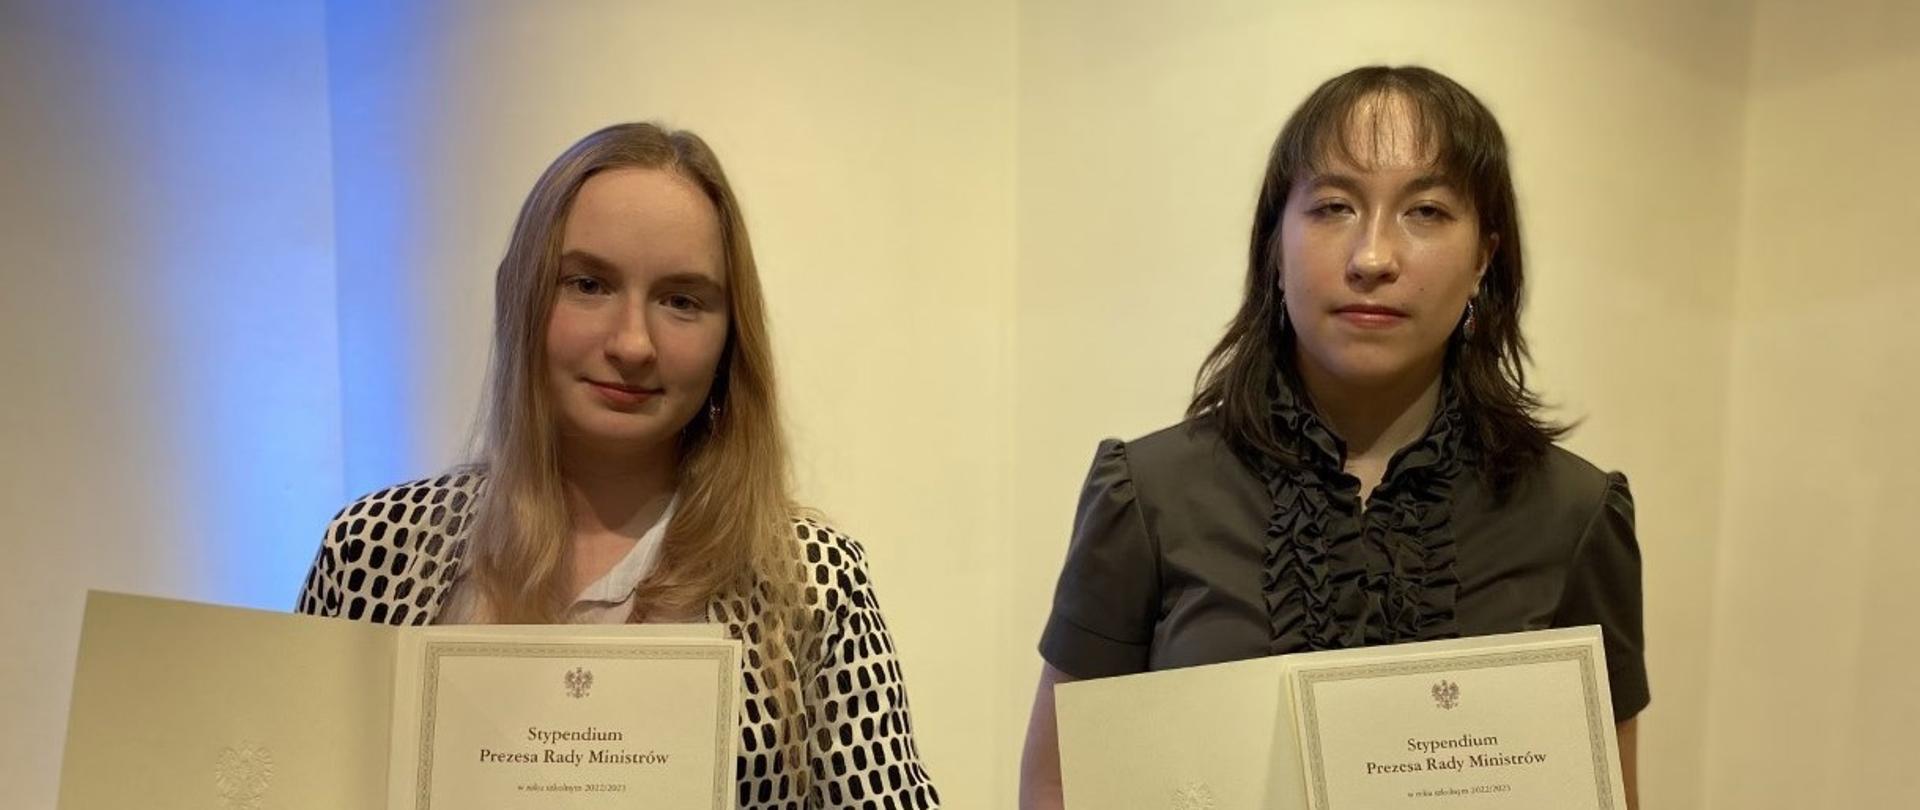 Zdjęcie dwóch laureatek stypendium prezesa rady ministrów. Po prawej stronie Anna Esnekier. Po lewej stronie Amelia Sułkowska.